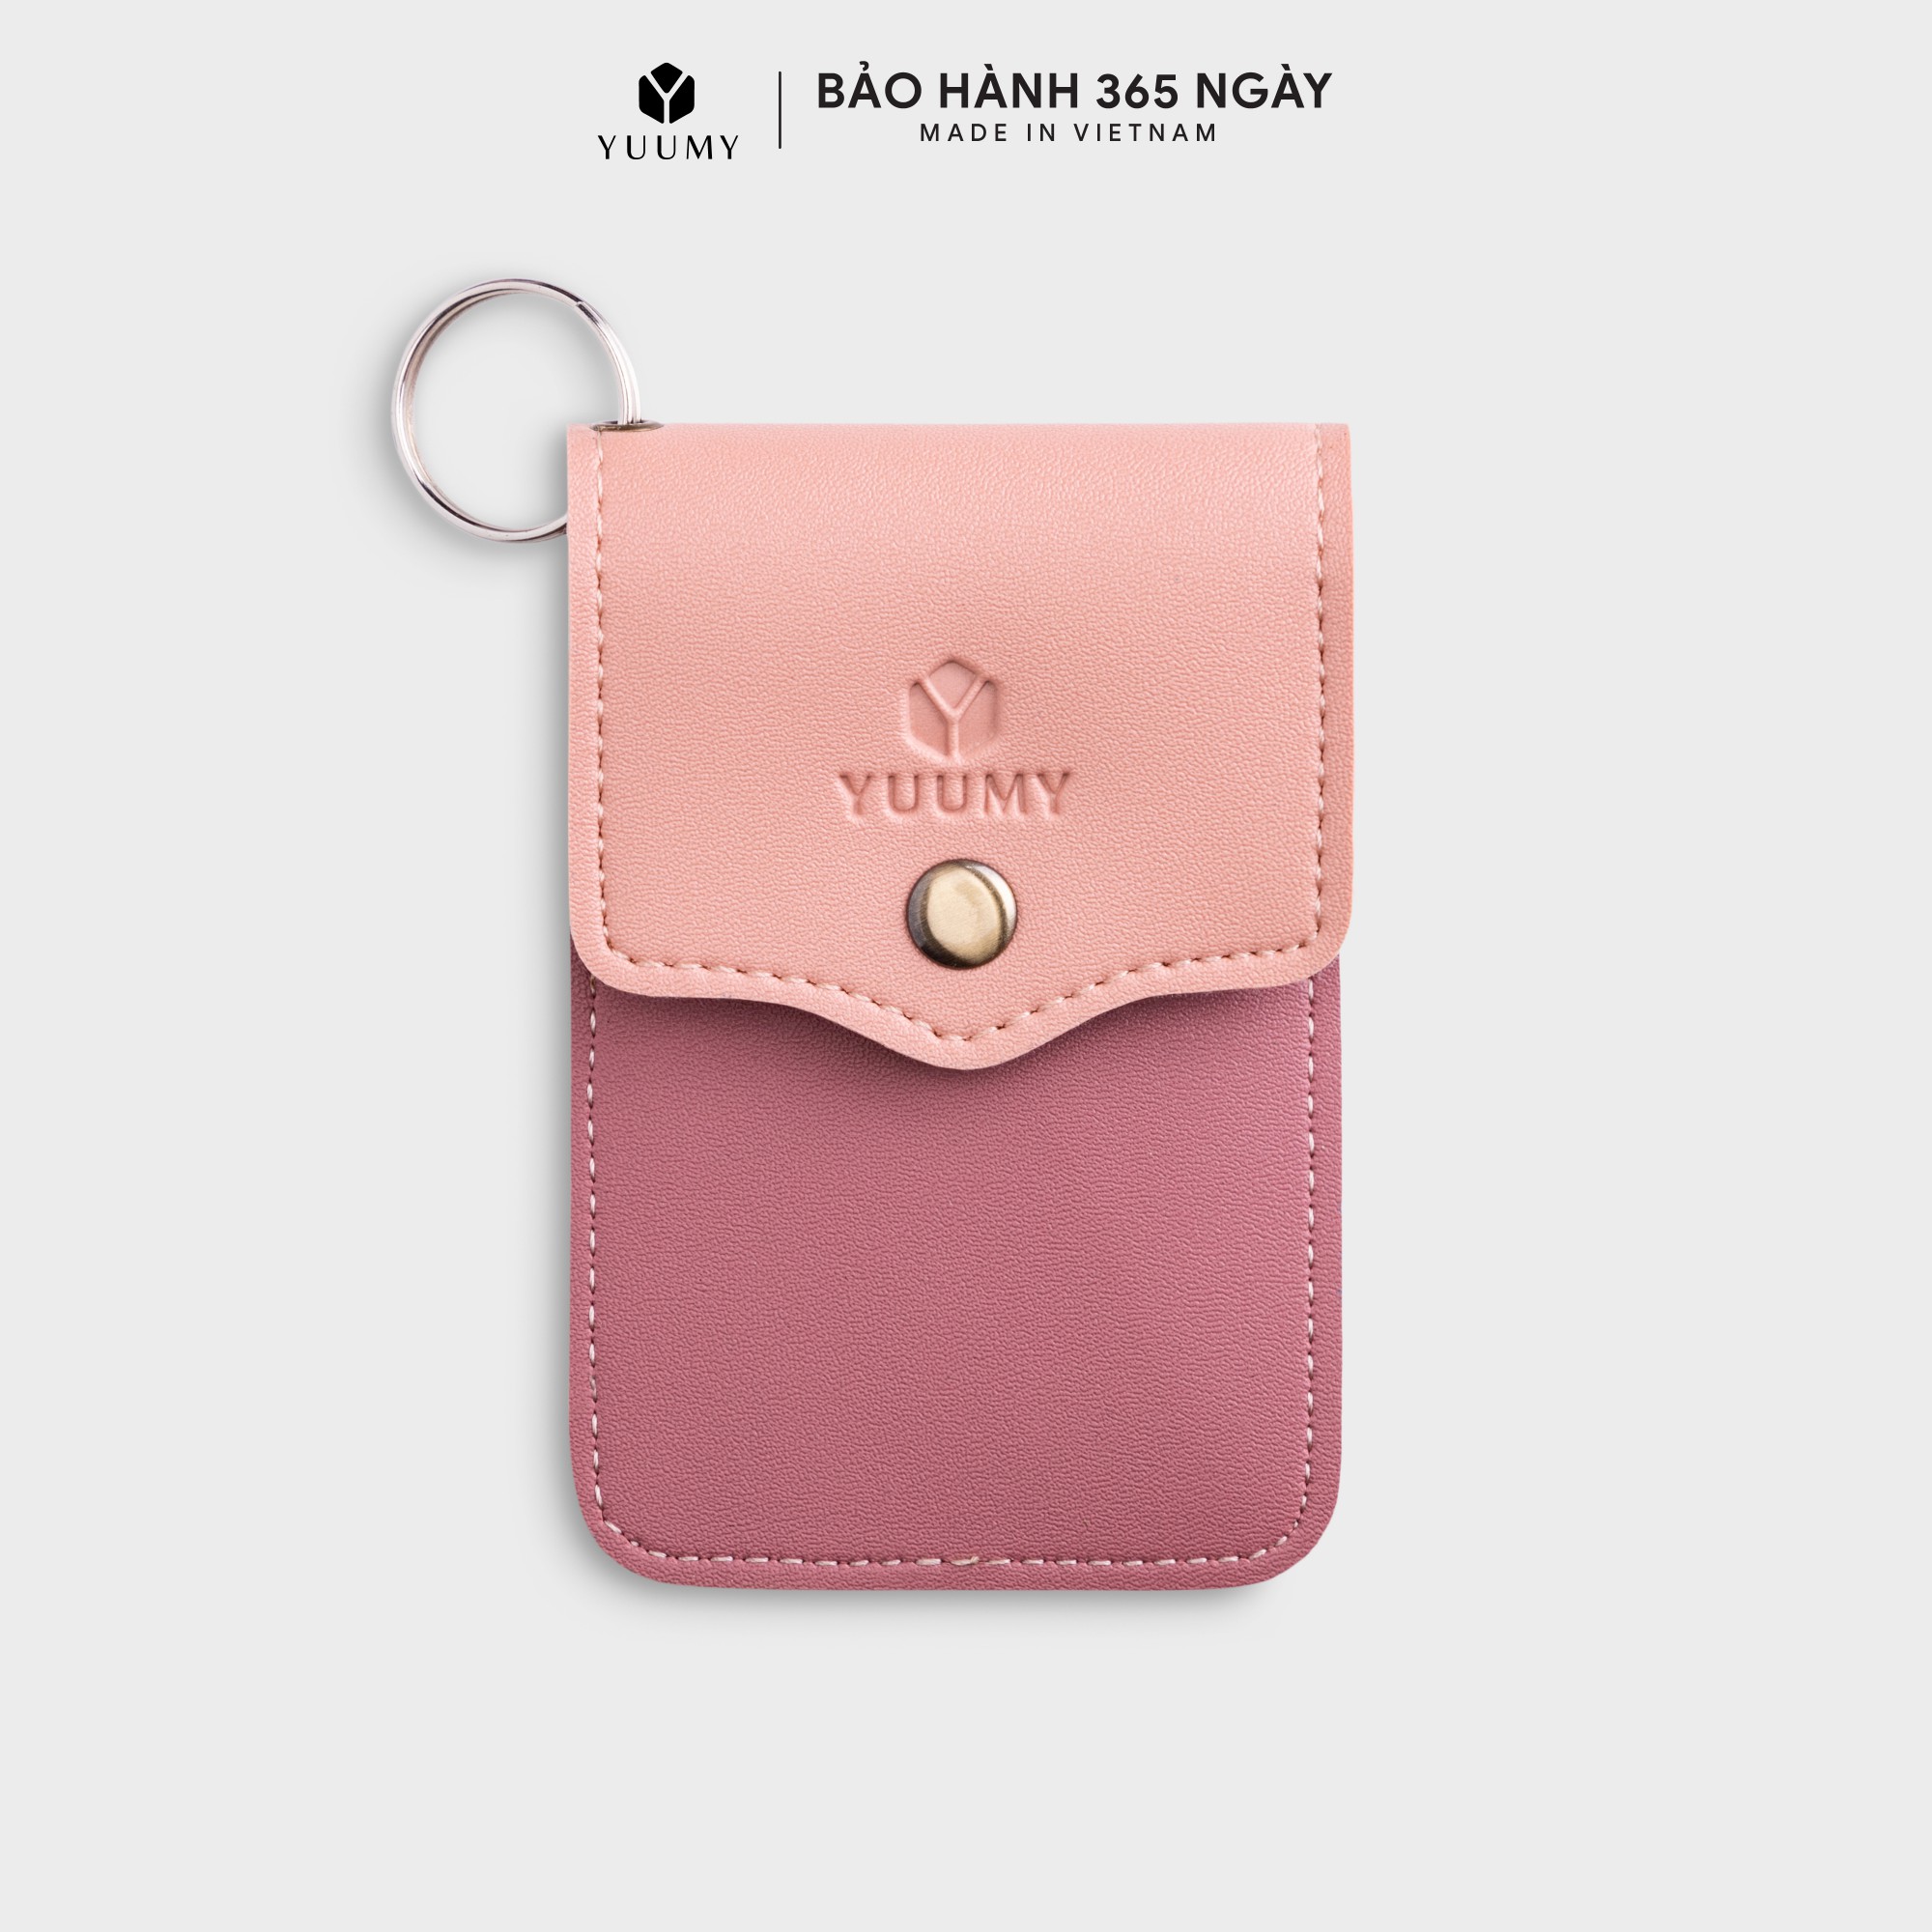 Móc khóa thời trang YUUMY YMK5 - Màu sắc trẻ trung - Thiết kế hiện đại - Đa chức năng sử dụng - Đựng thẻ ngân hàng, thẻ xe, chìa khóa xe - Tiên dụng mang theo bên người (Dài 7cm x Cao 10.5cm)